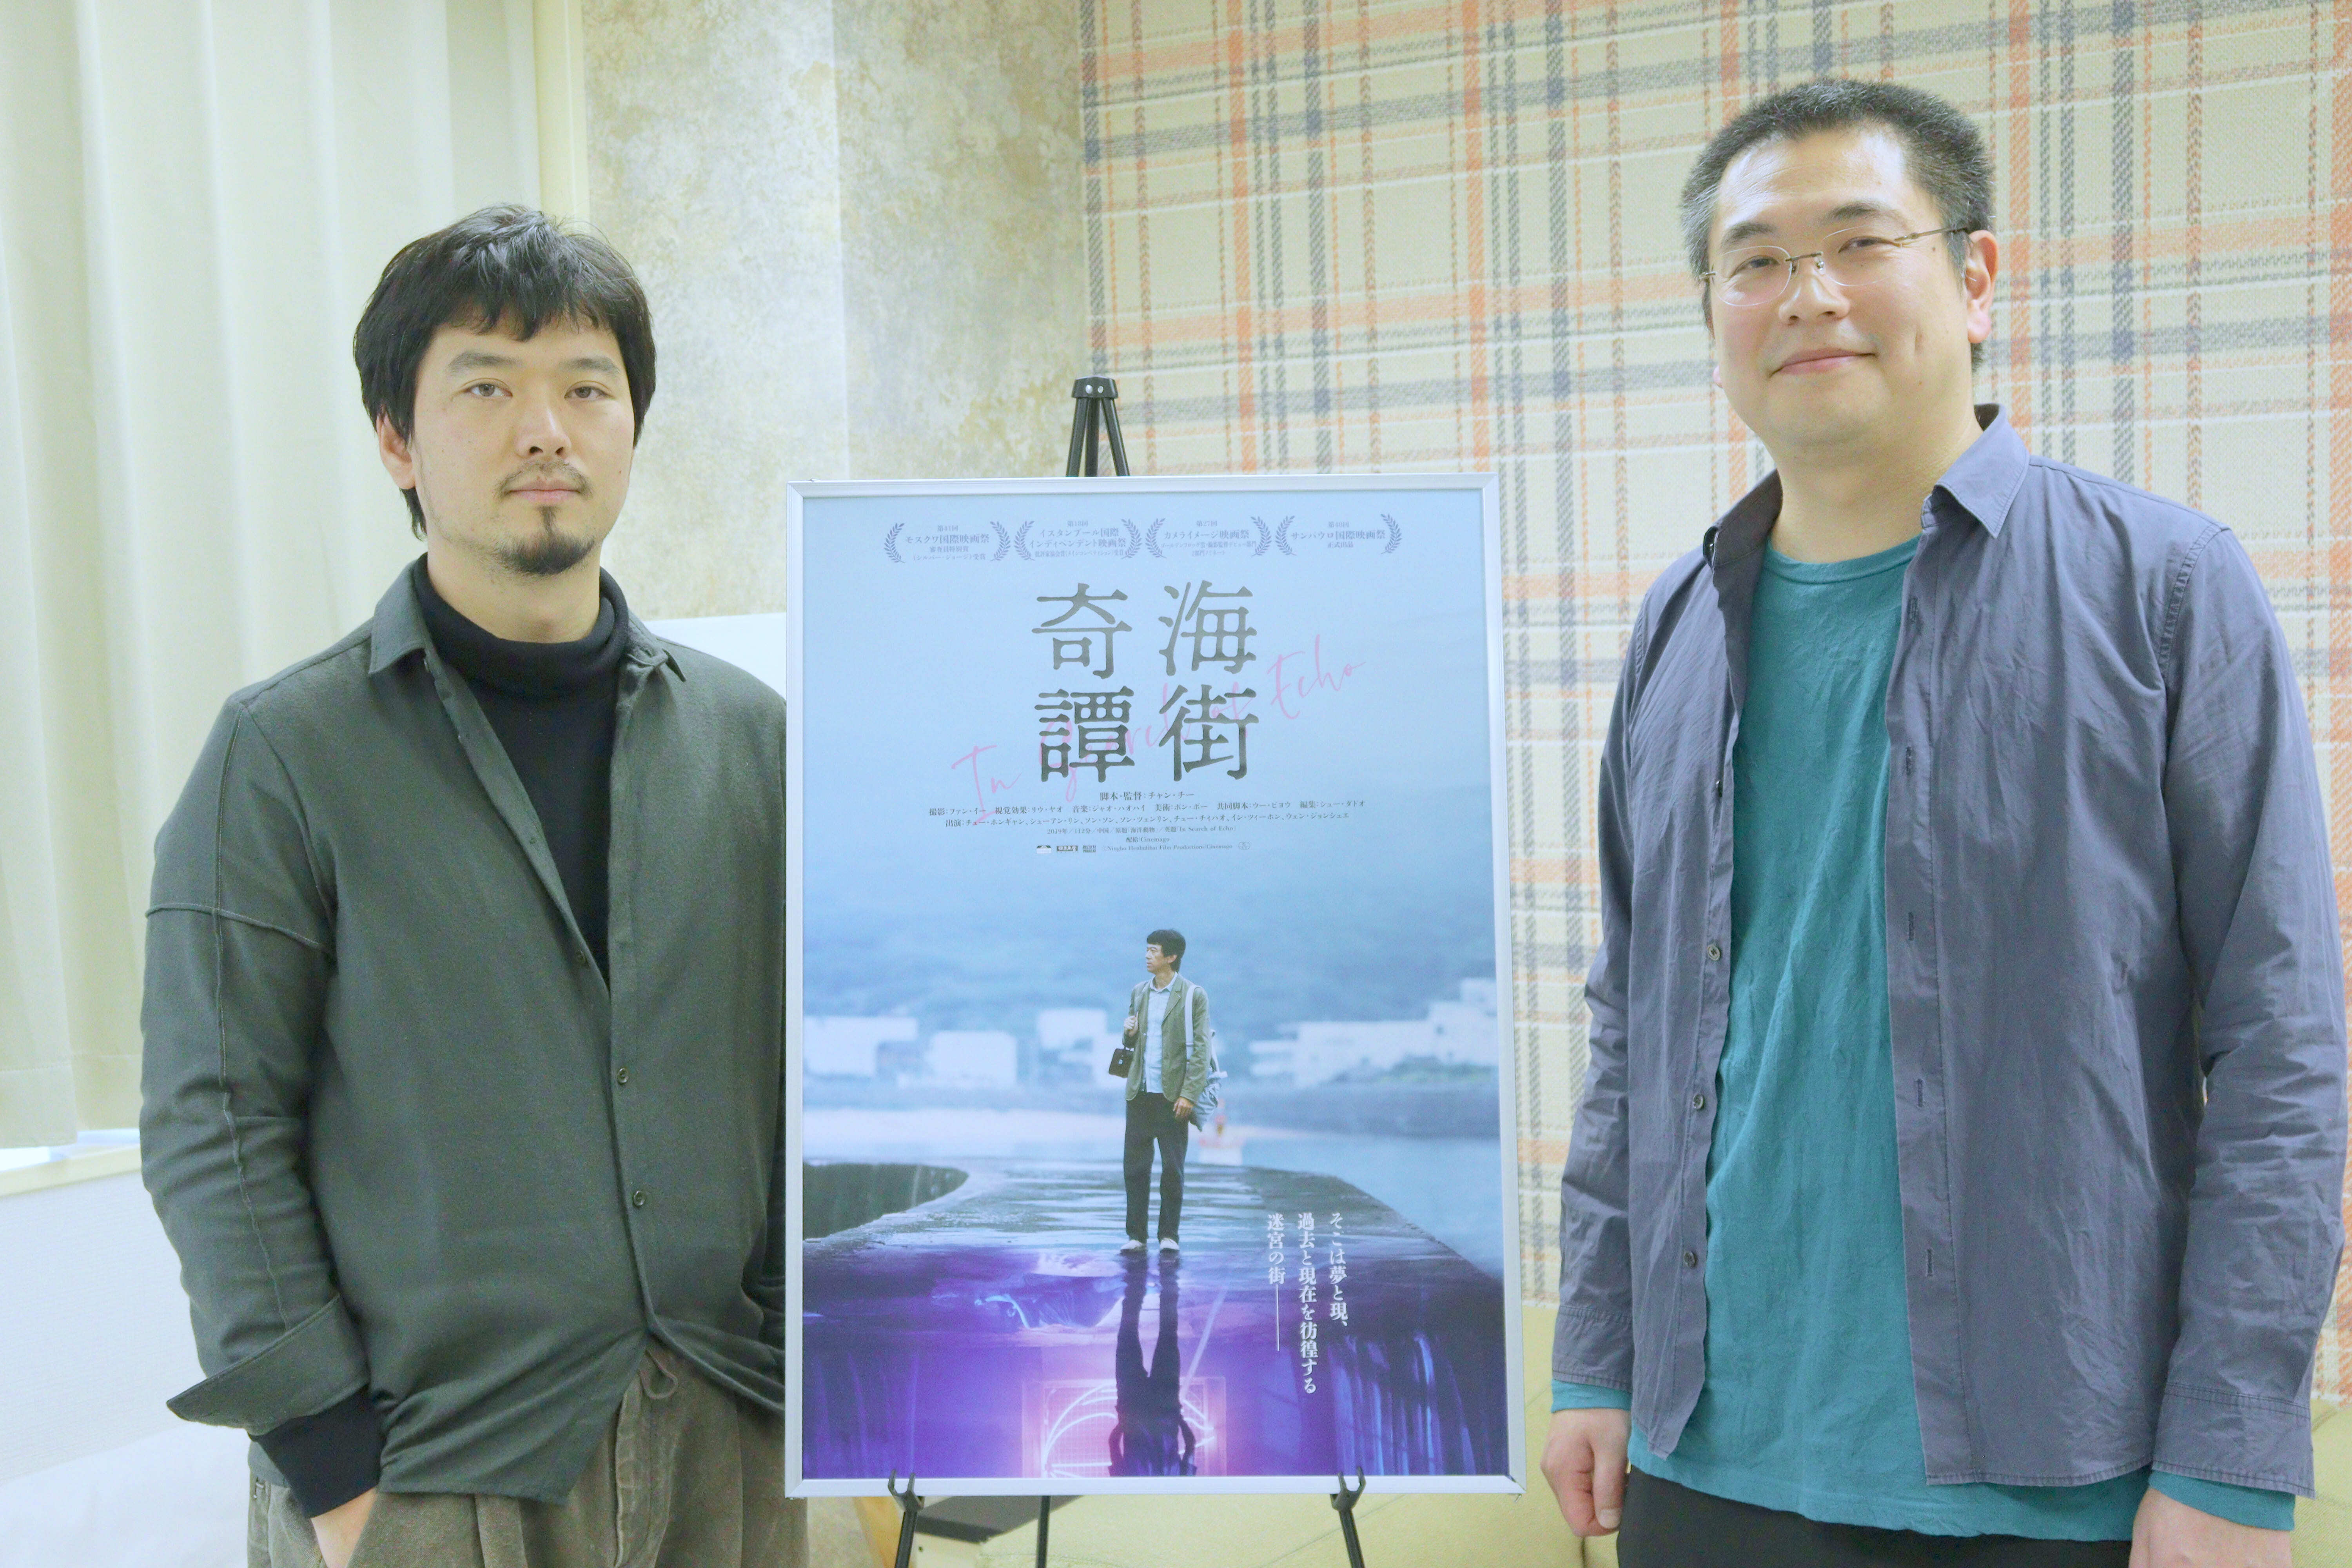 チャン・チー監督×串田壮史監督とのコラボ対談が実現　
「越境するアートハウス映画の“表現と視座”」を語る